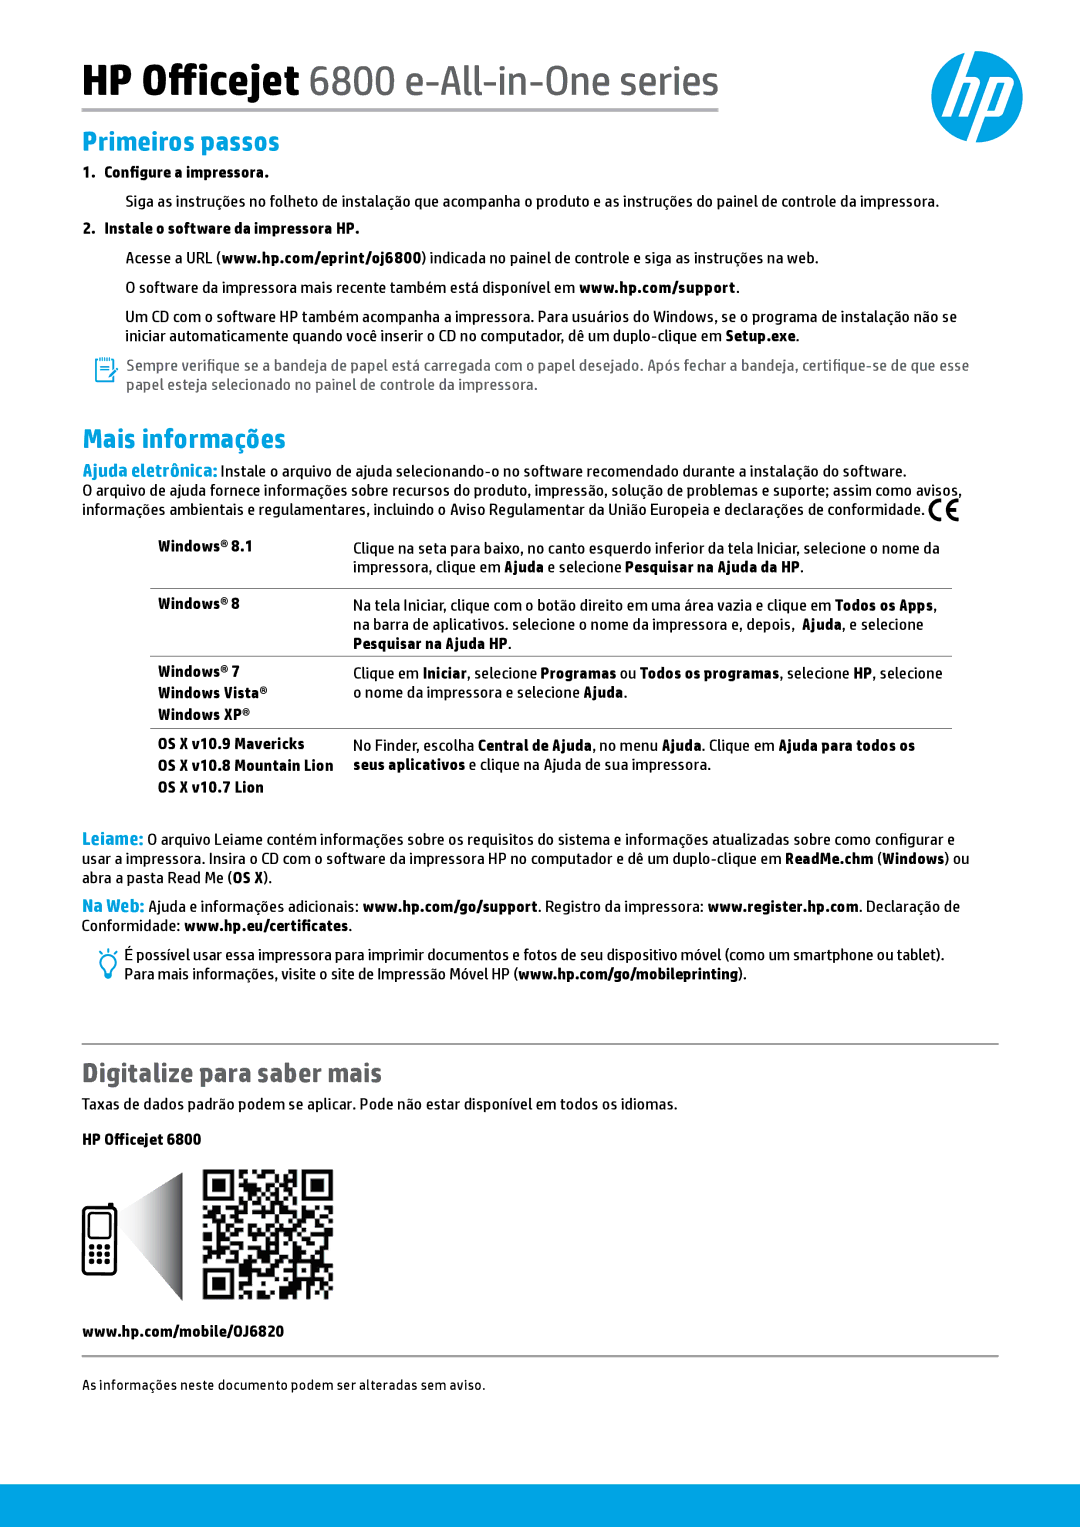 HP 6815, 6812 manual Primeiros passos, Digitalize para saber mais 